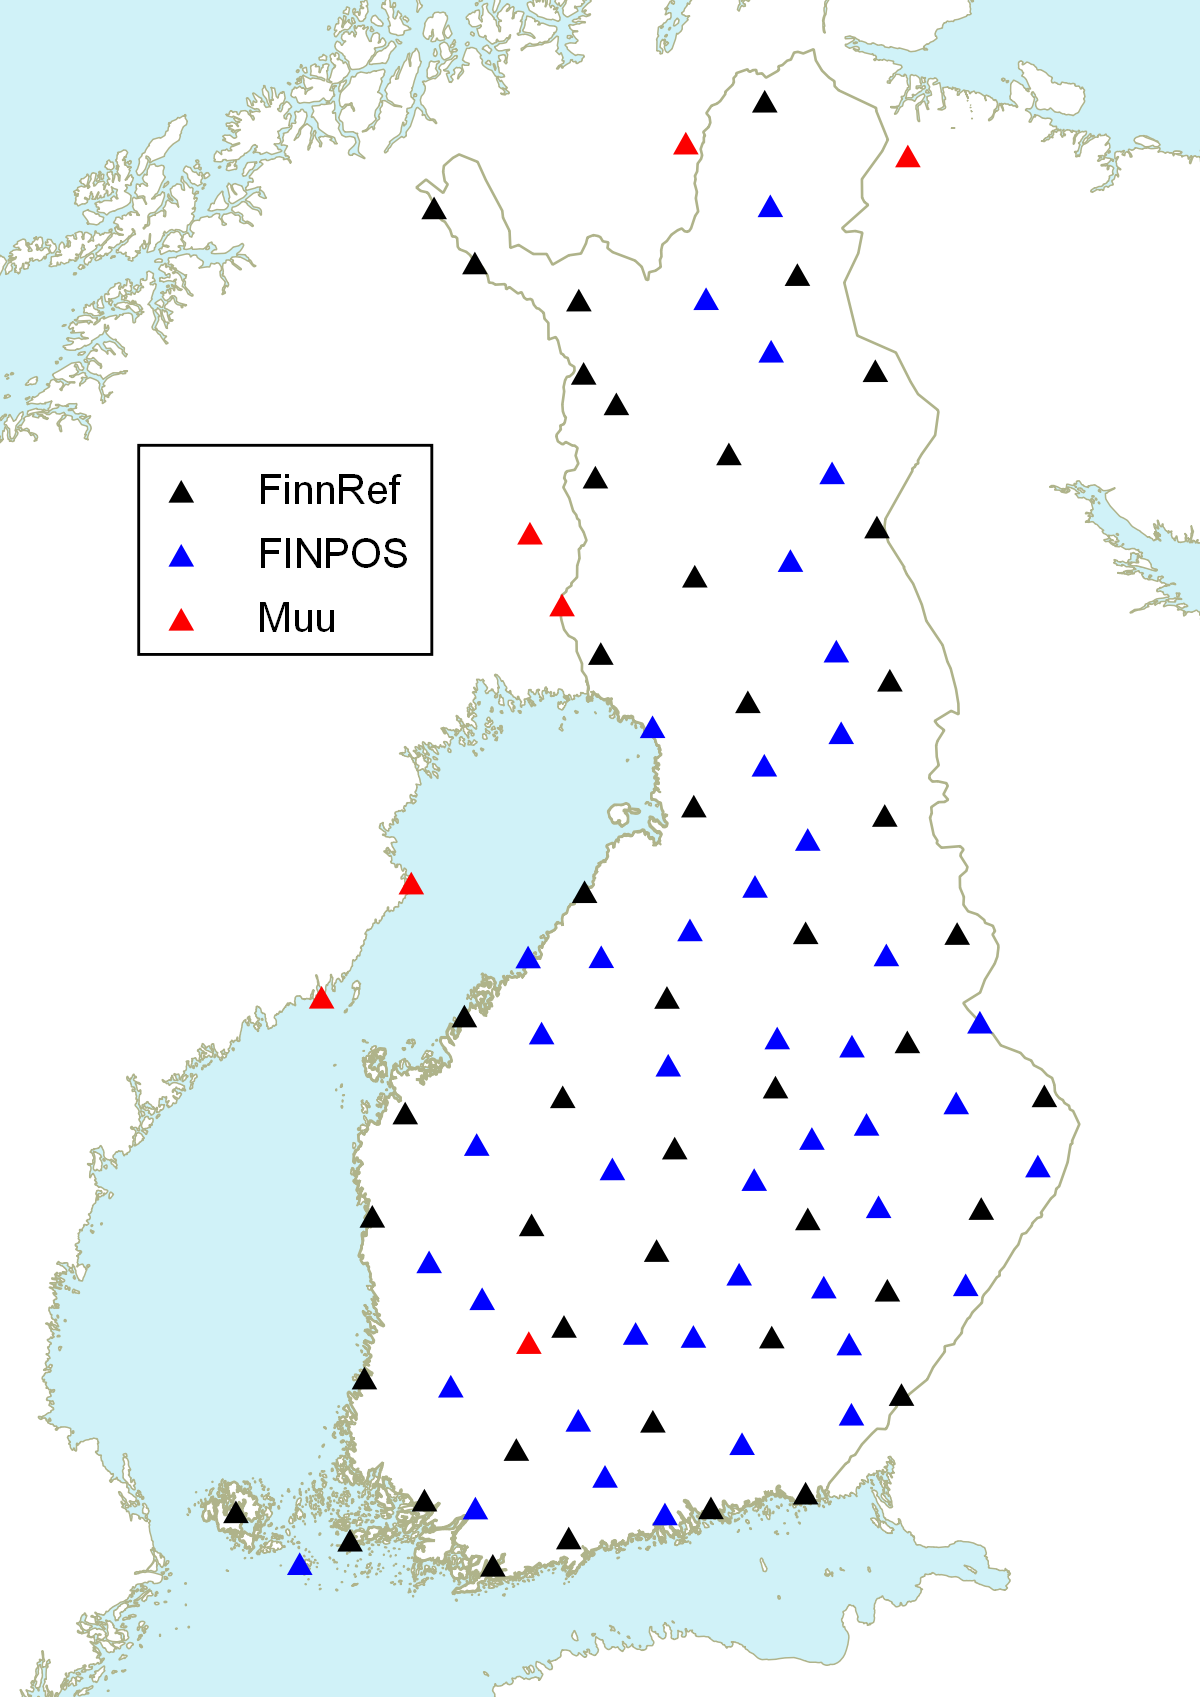 FINPOS-palvelun käyttämiä tukiasemia on tasaisesti ympäri Suomen.